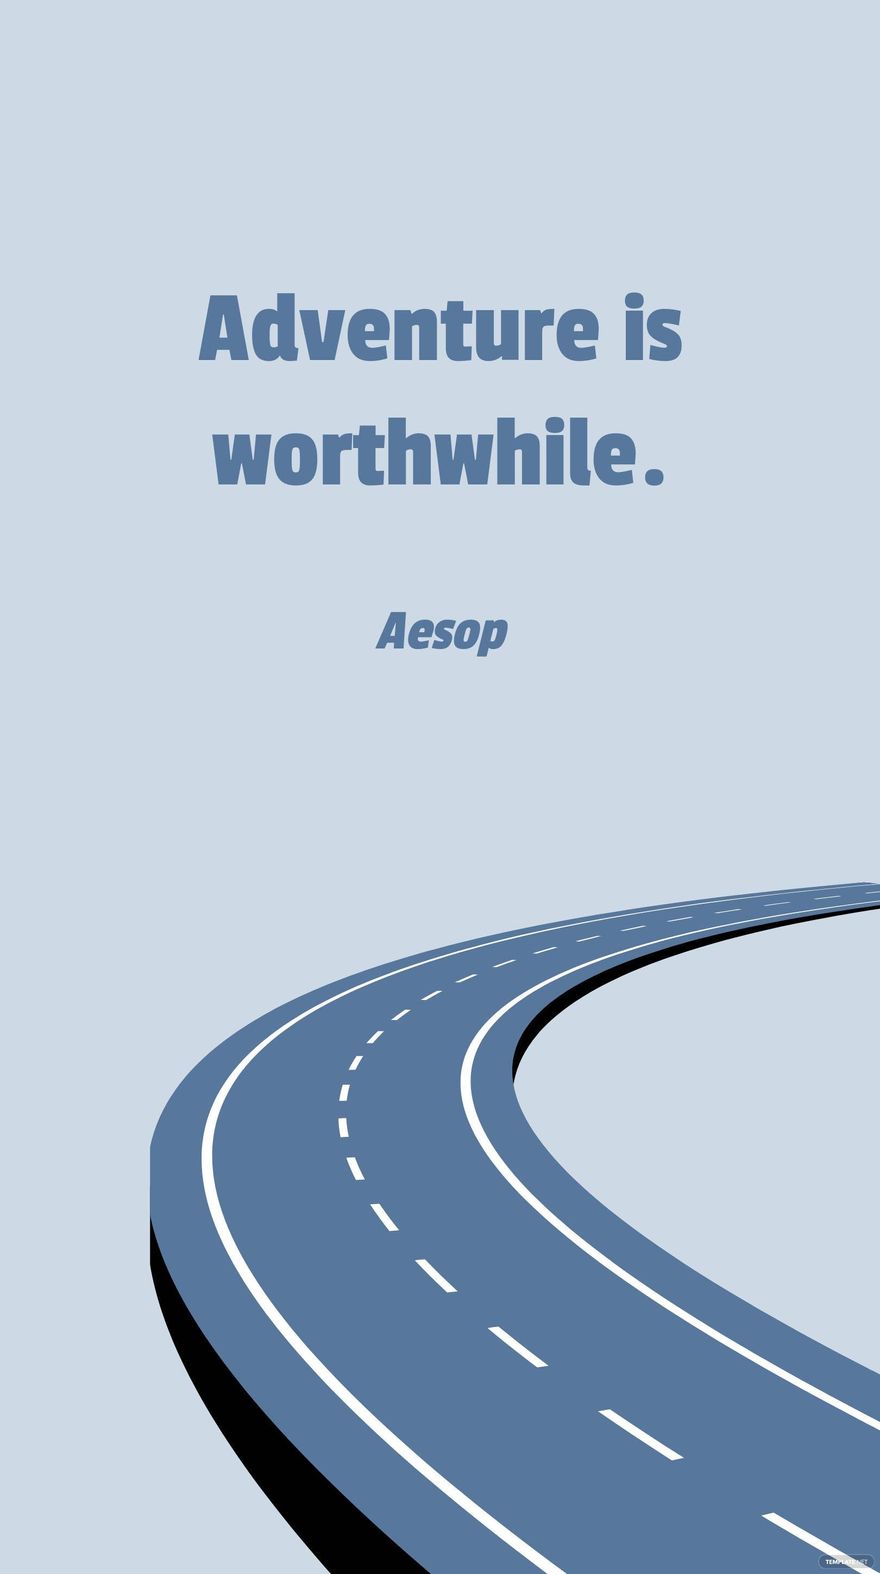 Free Aesop - Adventure is worthwhile. in JPG